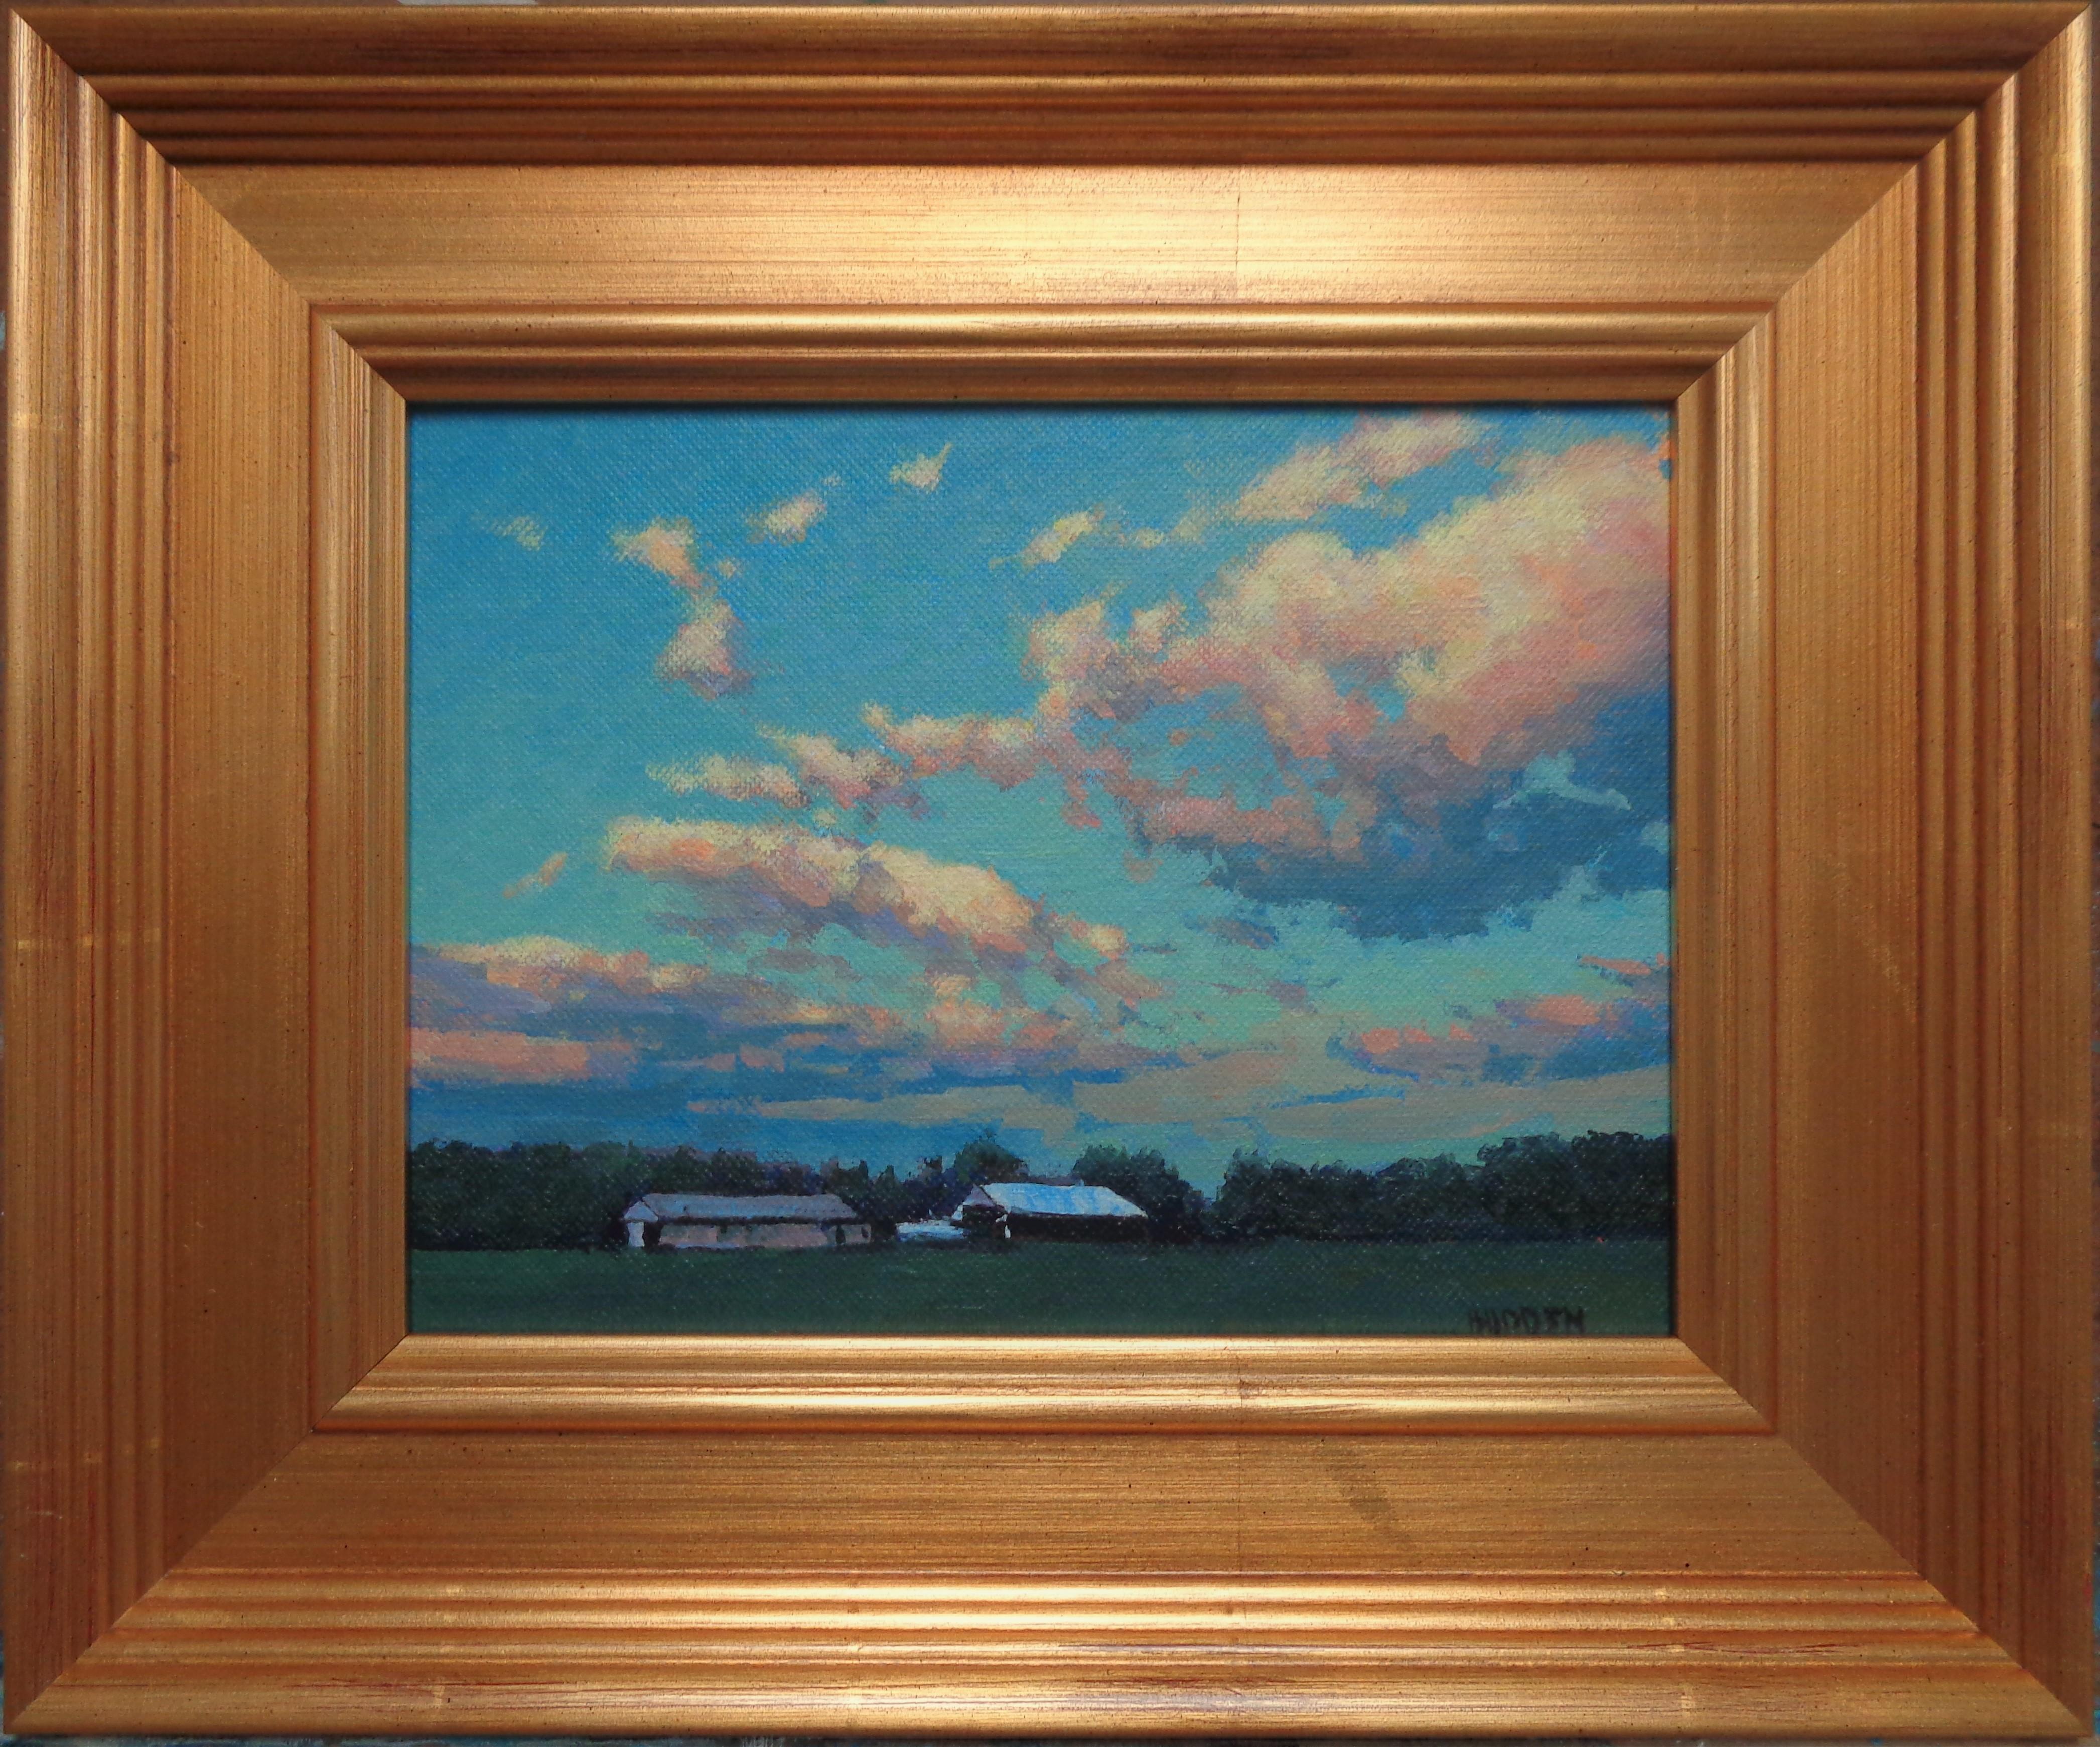 Afternoon Sky ist ein Ölgemälde auf einer Tafel, das gerade im Studio fertiggestellt wurde. Das Gemälde verströmt die reichen Qualitäten der Ölfarbe mit leuchtenden, kräftigen Farben, einer Vielzahl von verlorenen und gefundenen Kanten, sichtbarer